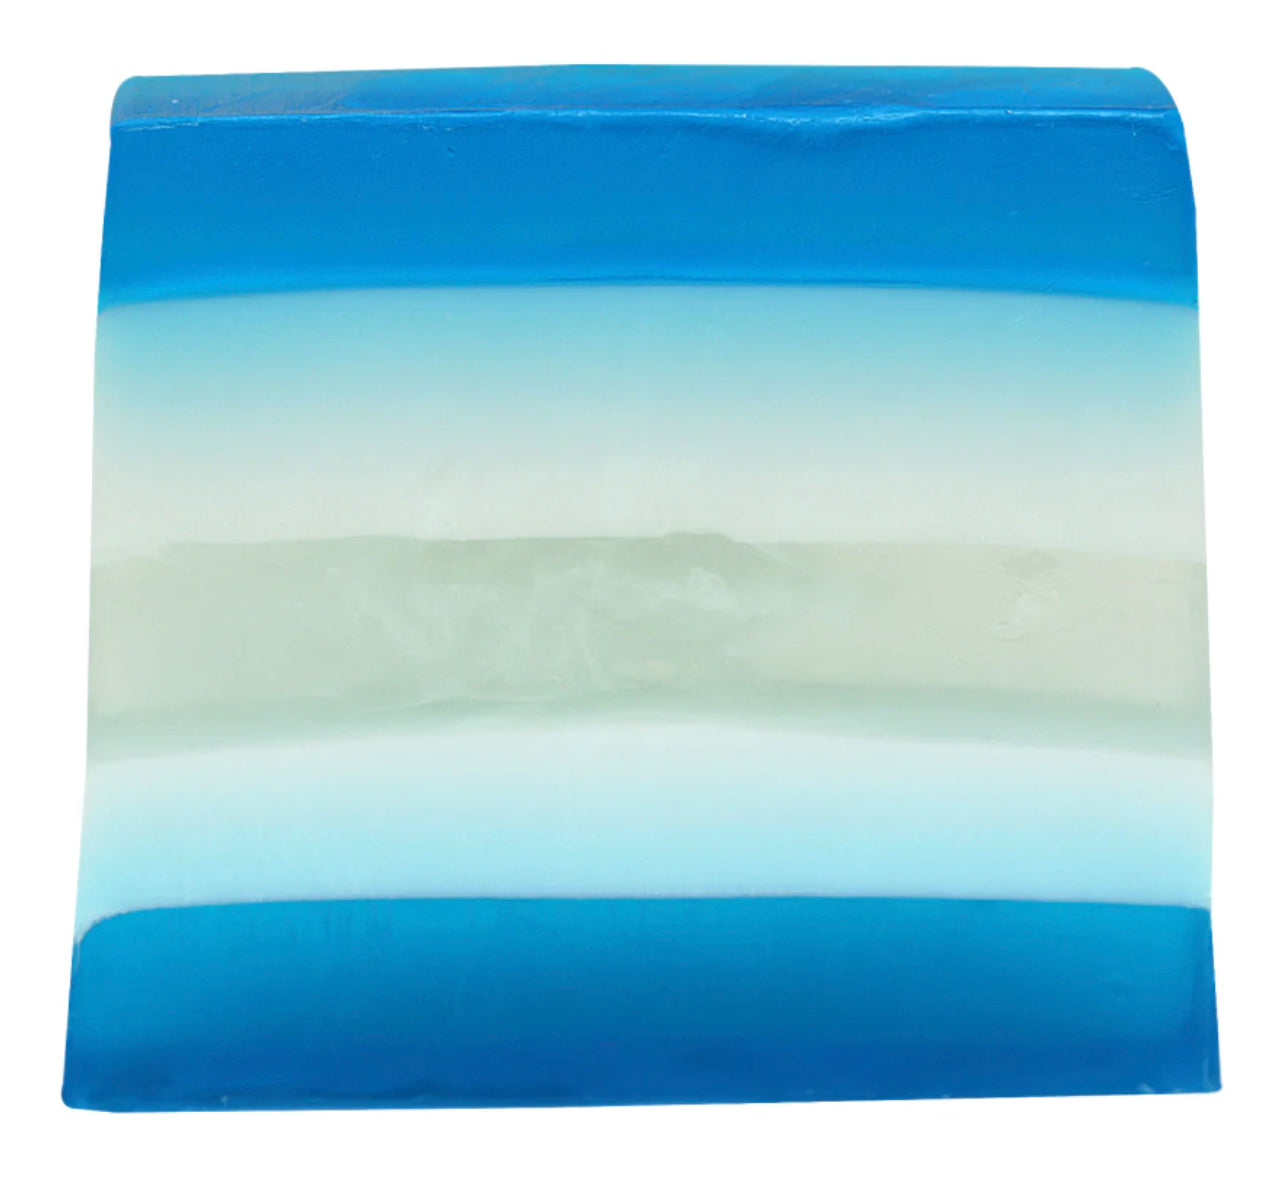 The Big Blue Soap